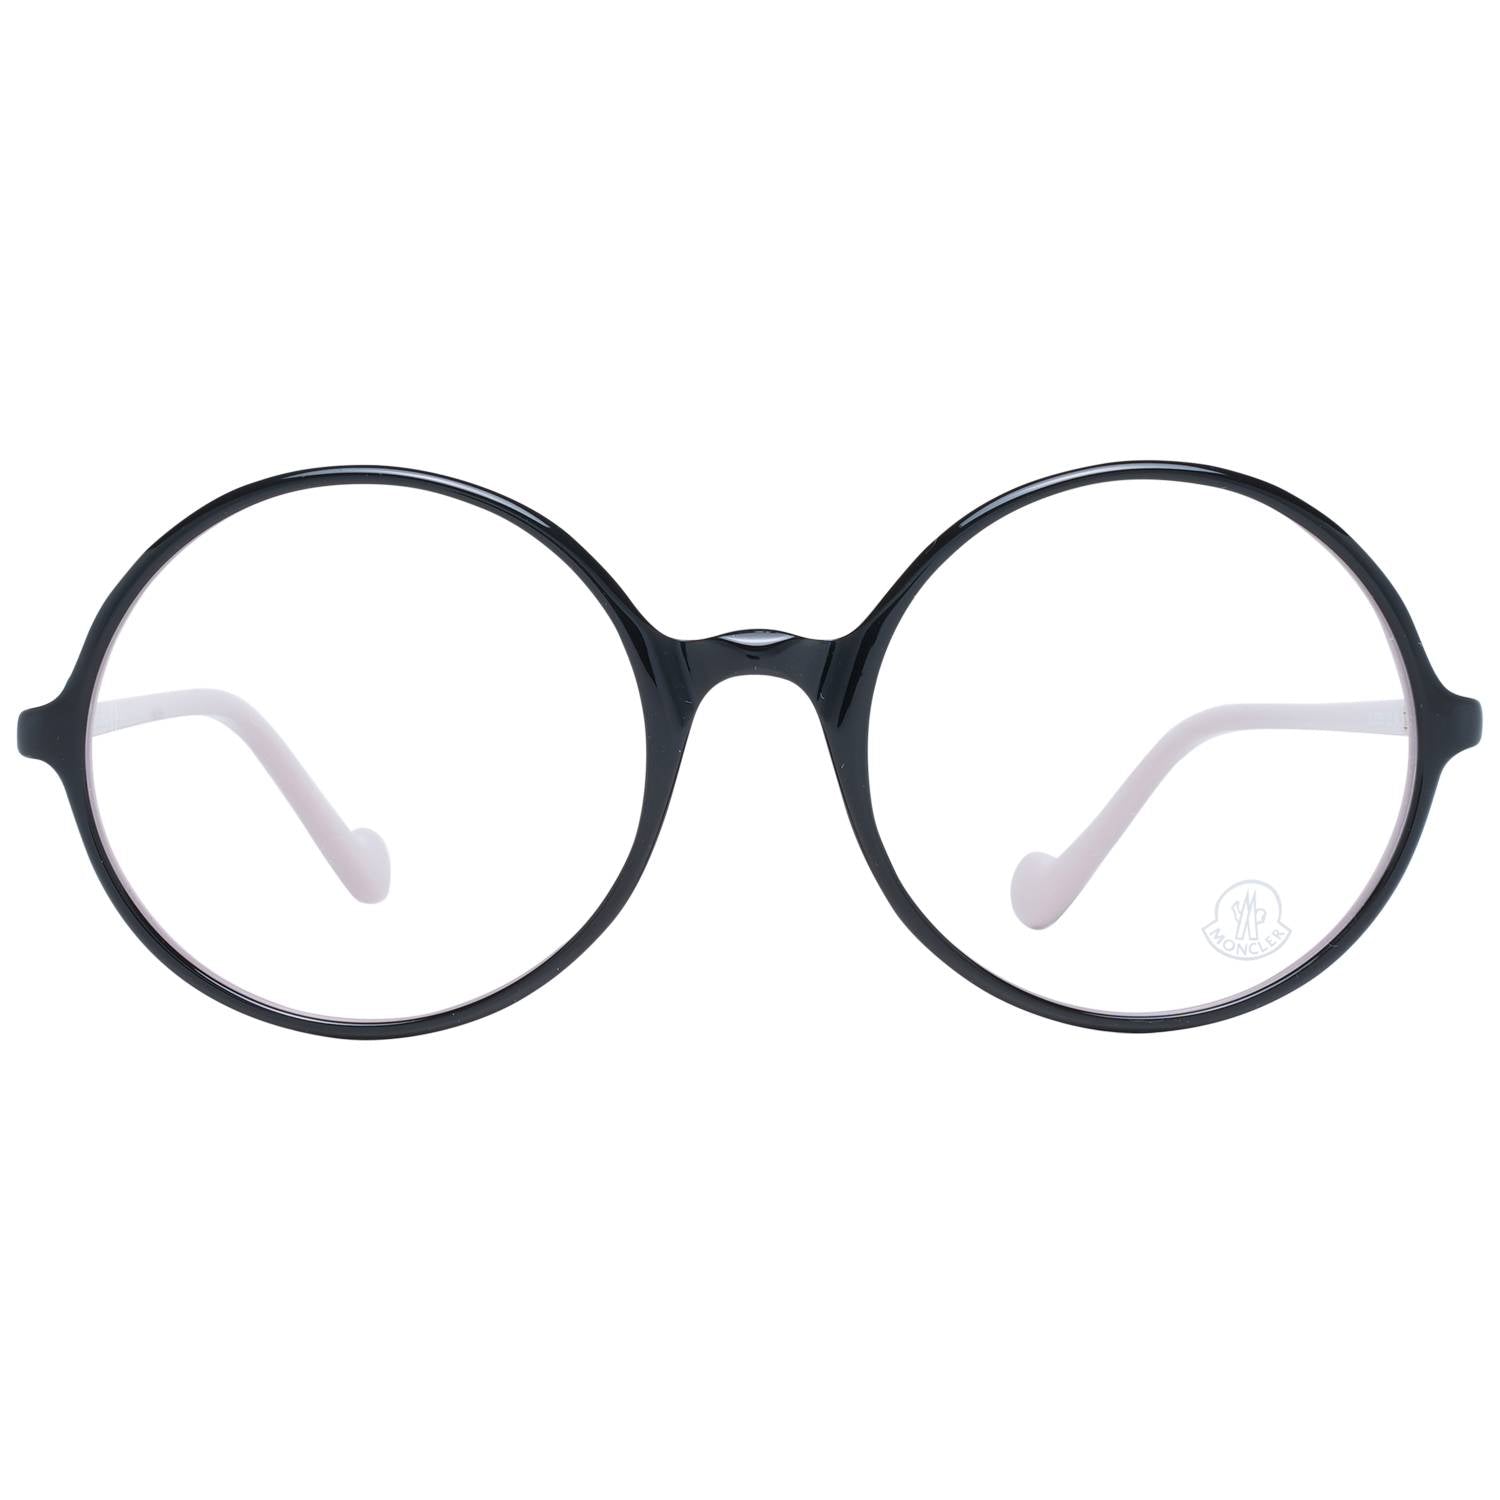 Moncler Eyeglasses Moncler Glasses Frames ML5088 005 54mm Eyeglasses Eyewear UK USA Australia 